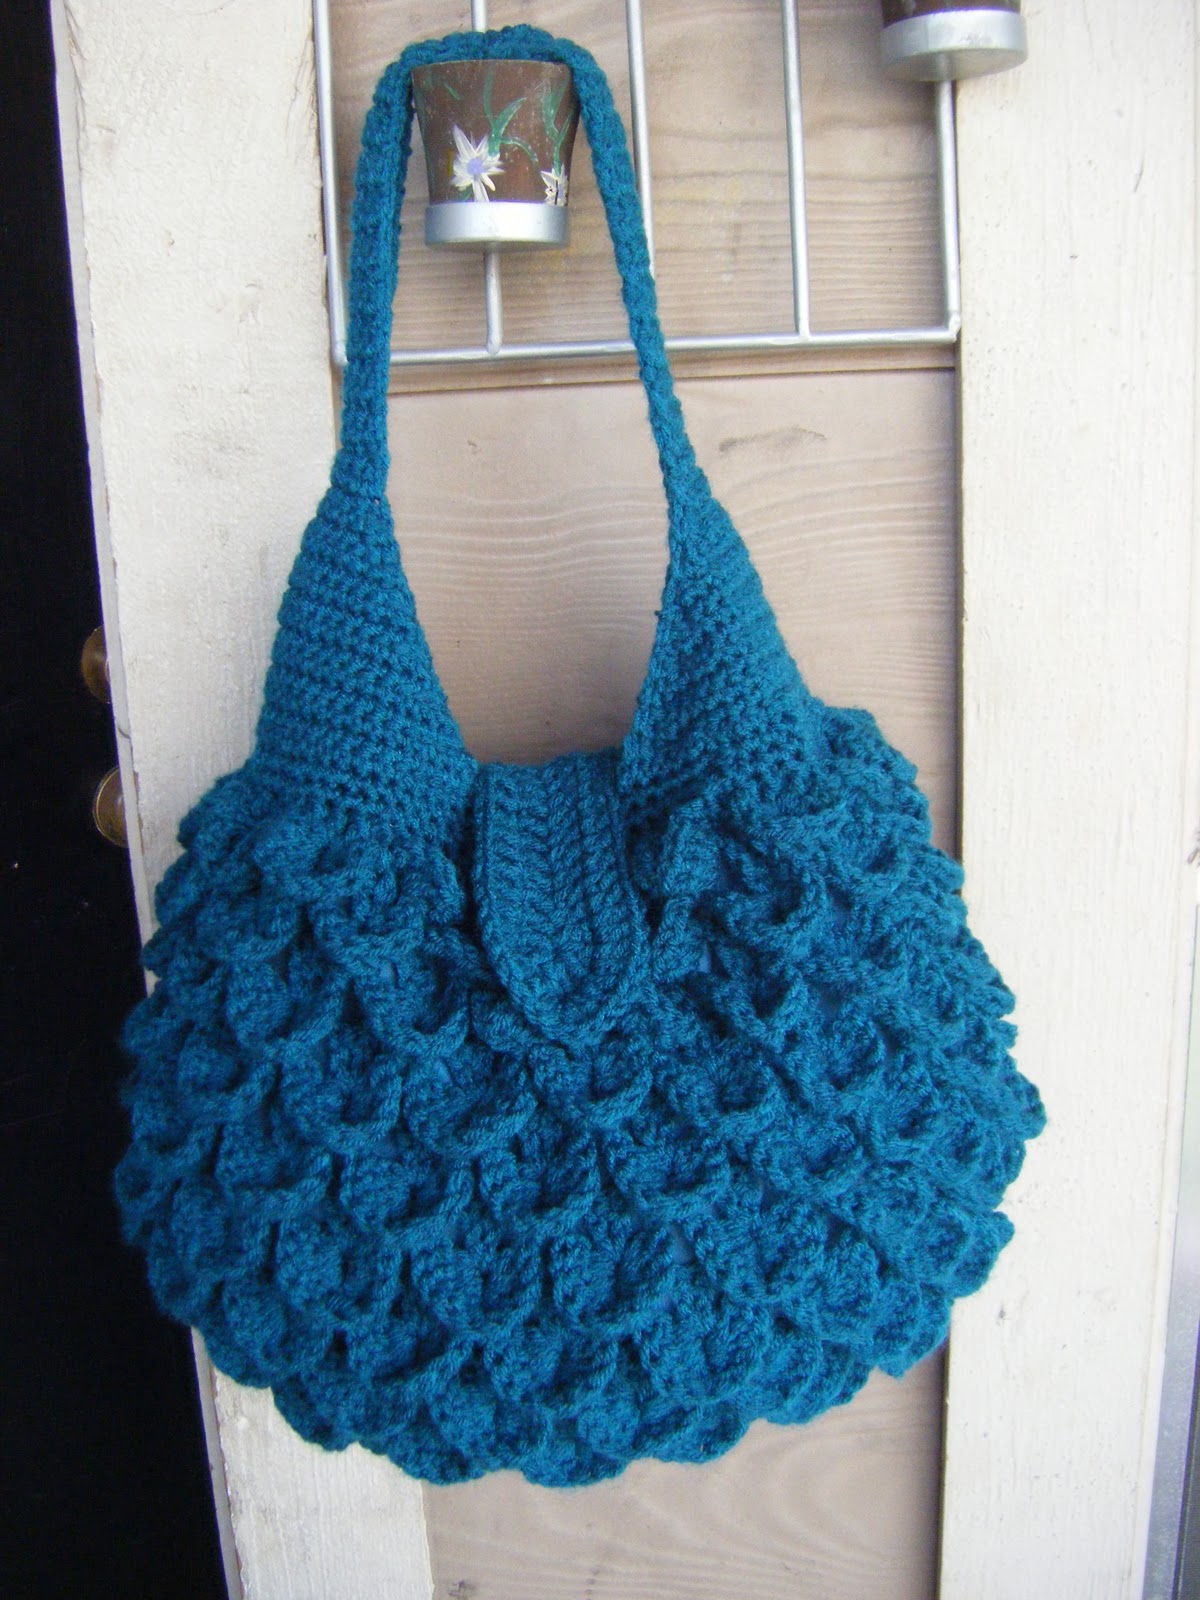 CROCHET BAGS FREE PATTERN – Crochet Patterns